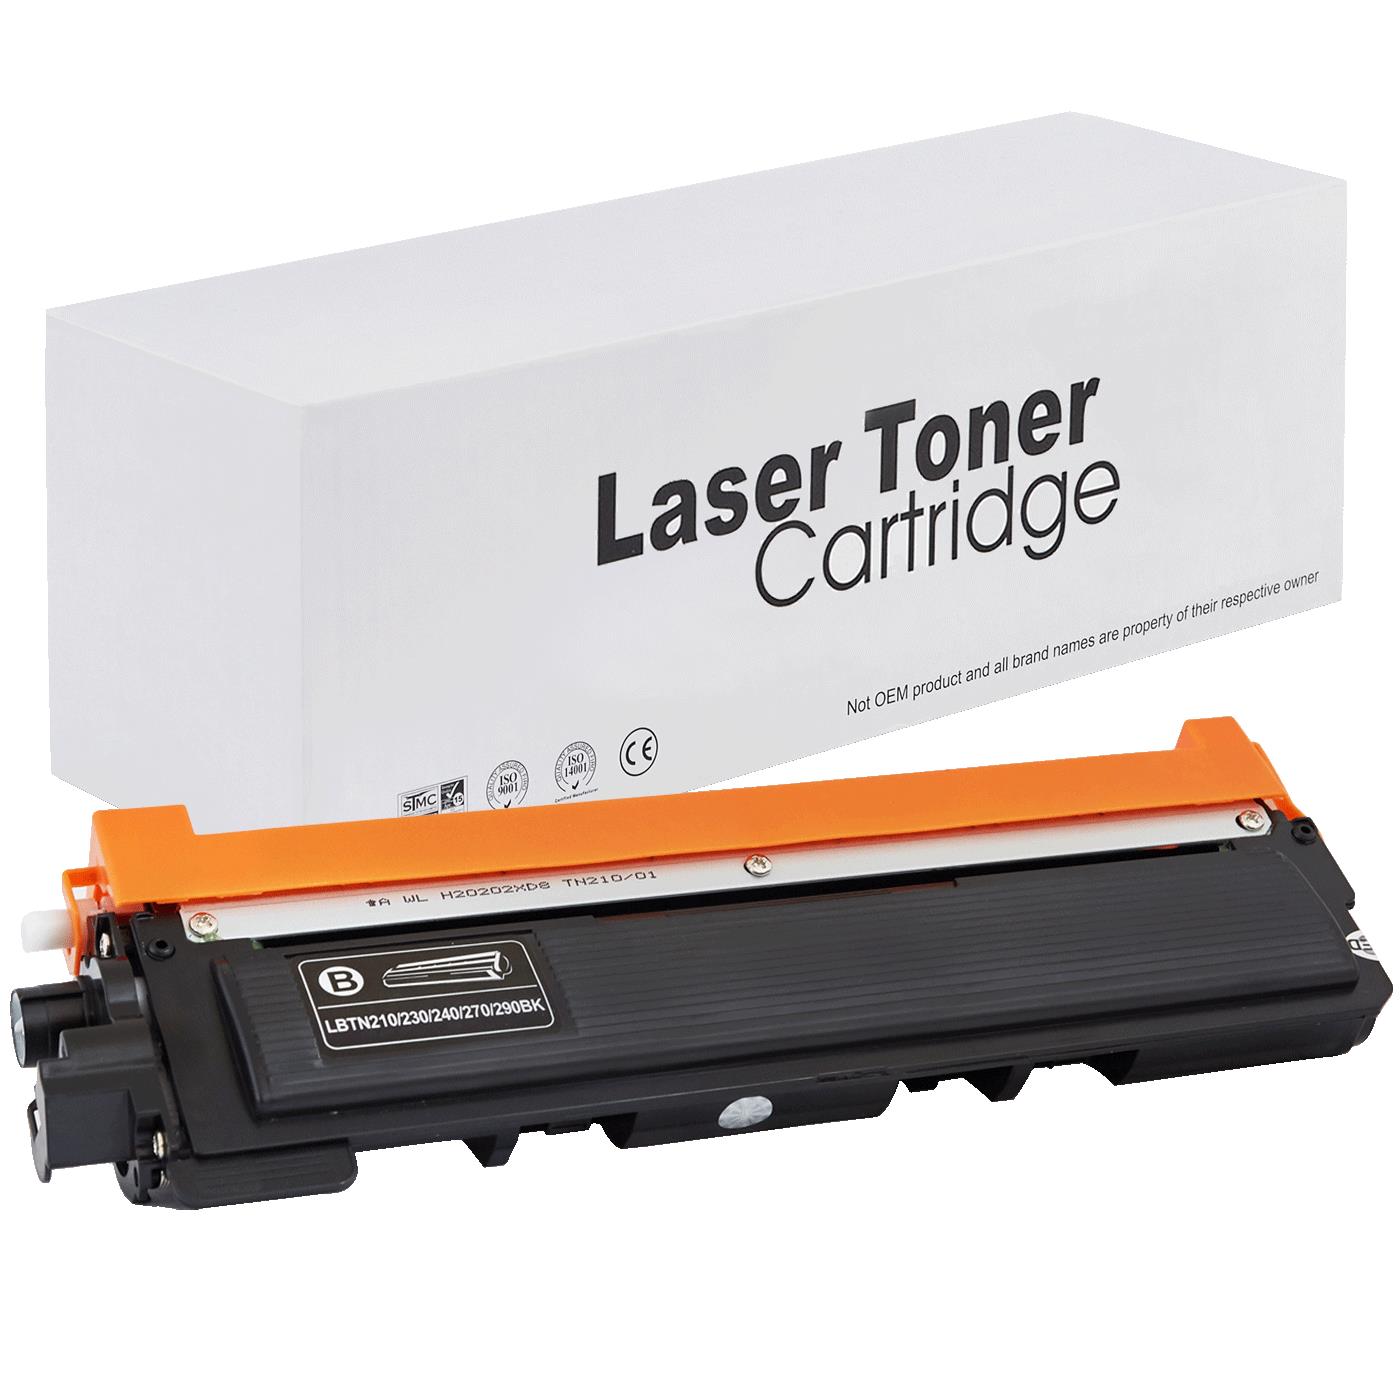 съвместима тонер касета за принтери и печатащи устройства на Brother HL 3070 CW Toner BR-230B | TN230BK. Ниски цени, прецизно изпълнение, високо качество.